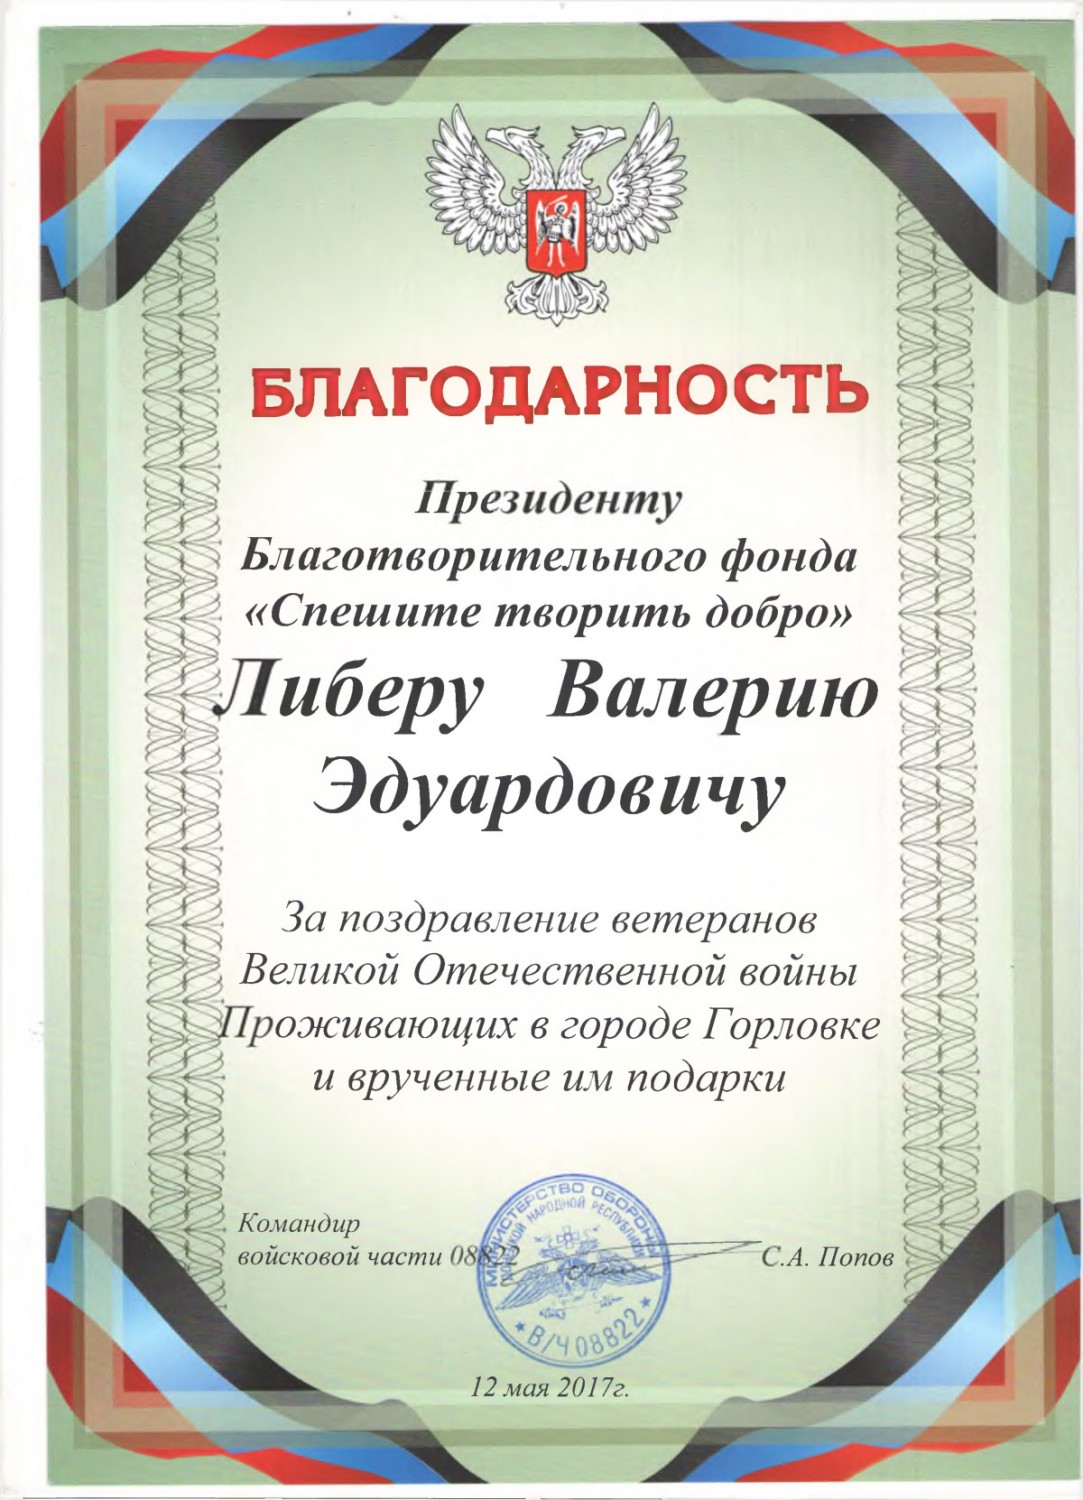 Благодарственное письмо от войсковой  части 08882 от командира Попова С.А.